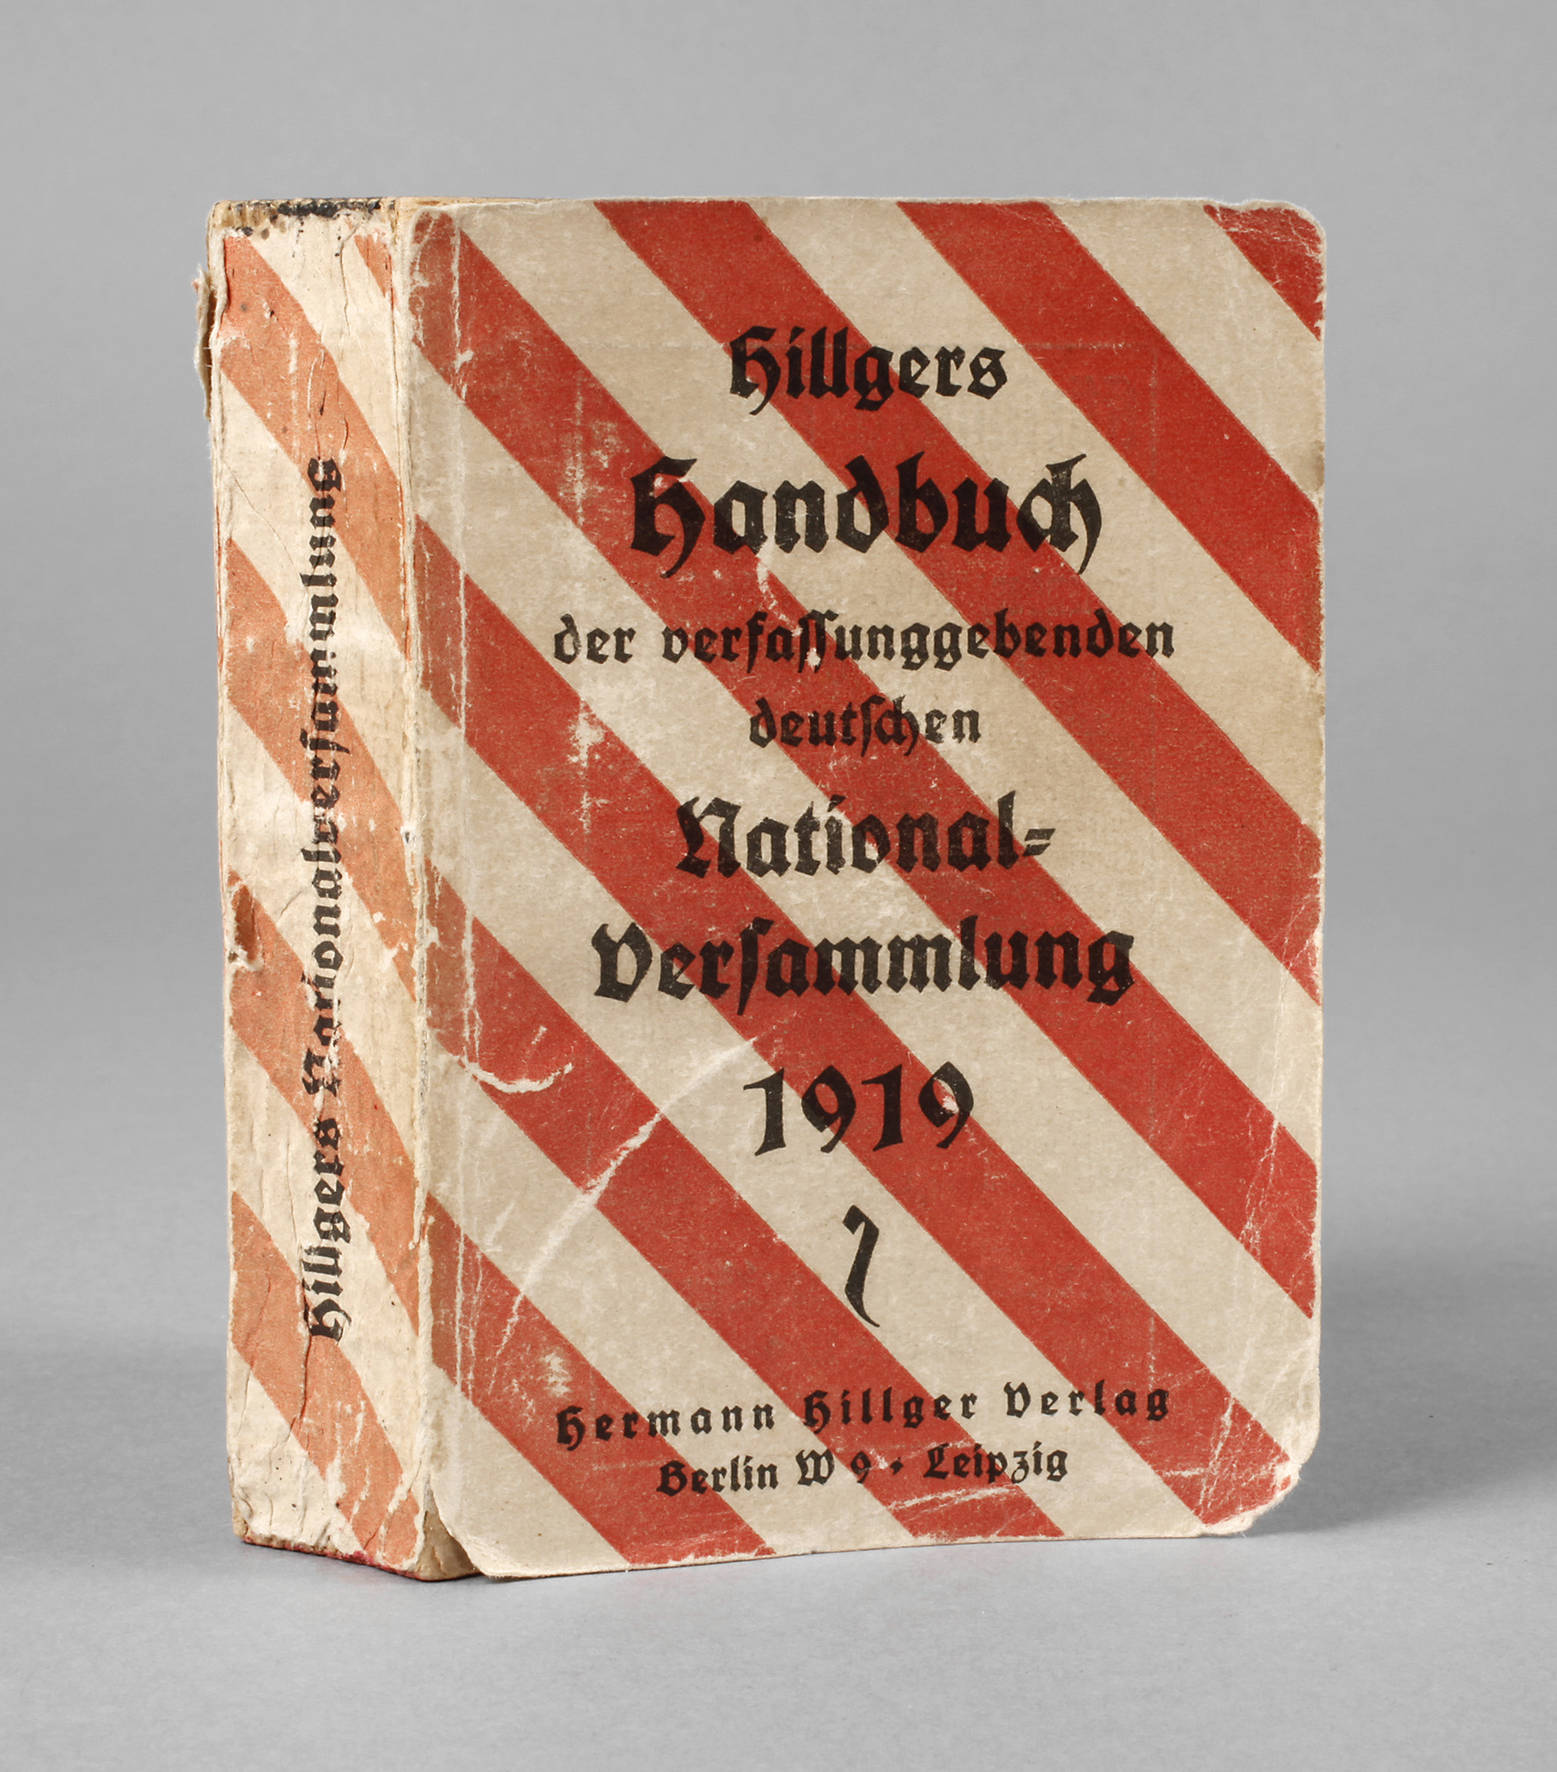 Hillgers Handbuch Nationalversammlung